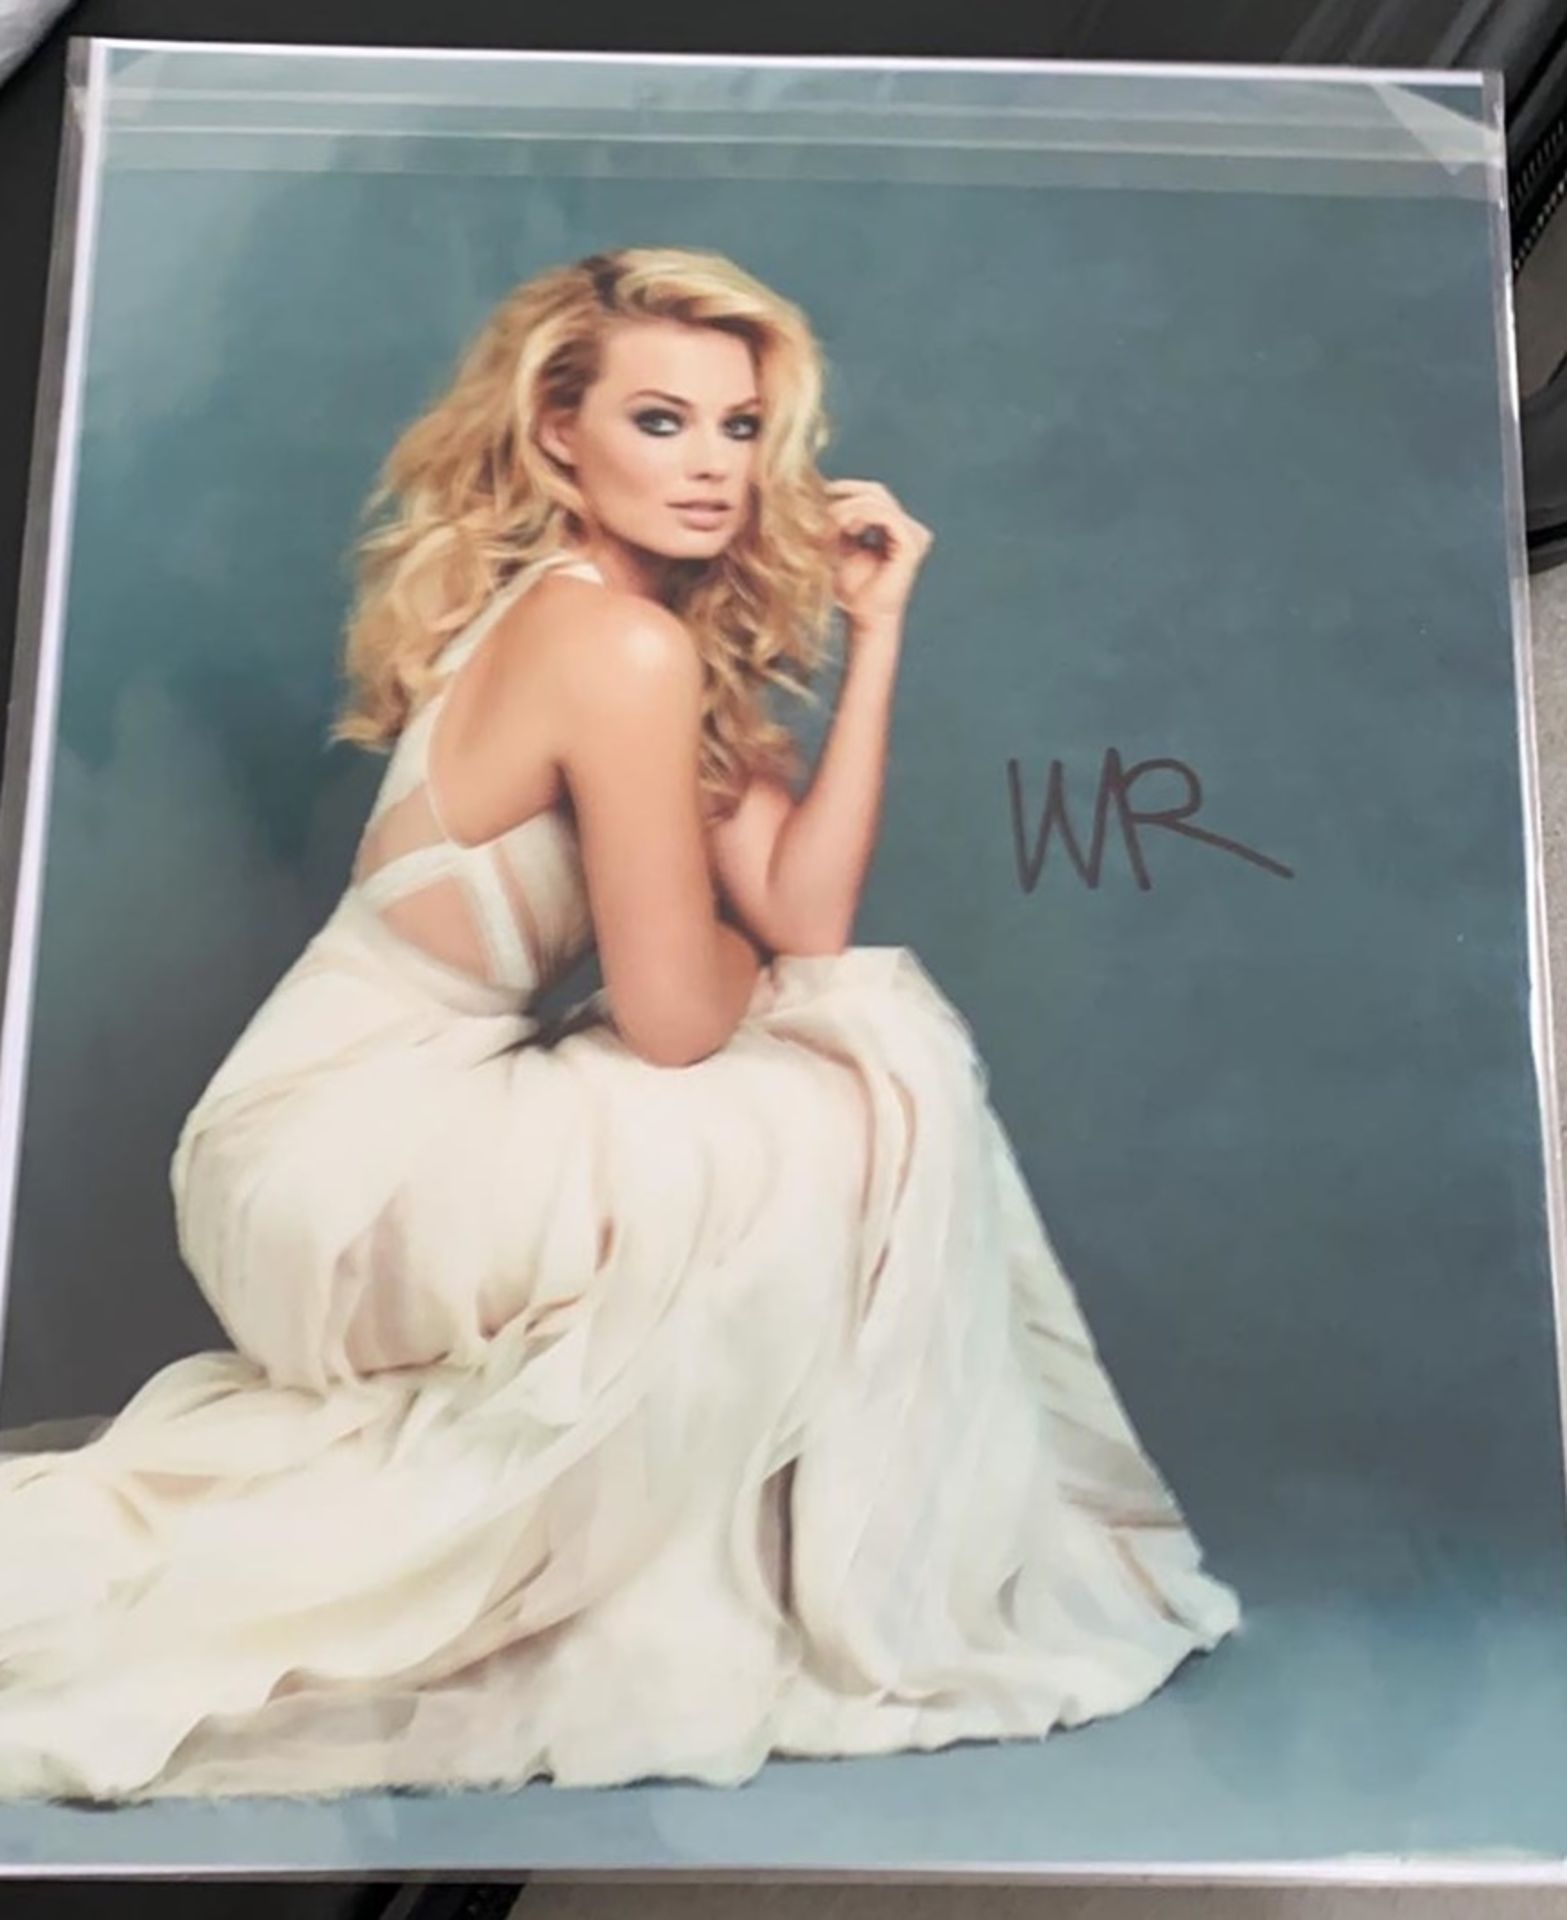 1 x Signed Autograph Colour Picture - Margot Robbie - With COA - Size 10 x 8 Inch - CL590 - NO VAT